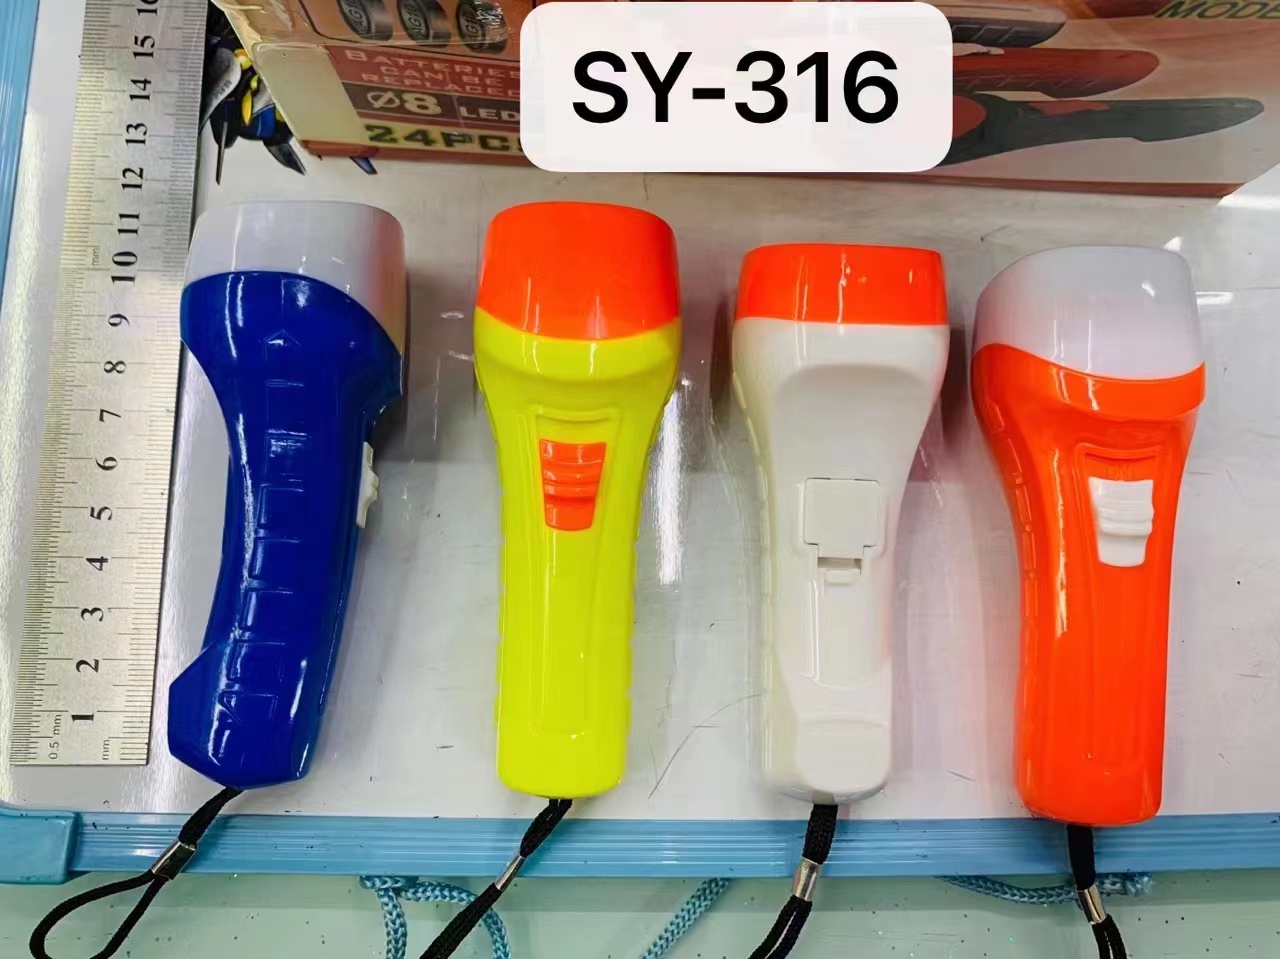 白光手电筒  LED手电筒  塑料纽扣电池手电筒 SY-316手电筒详情图1